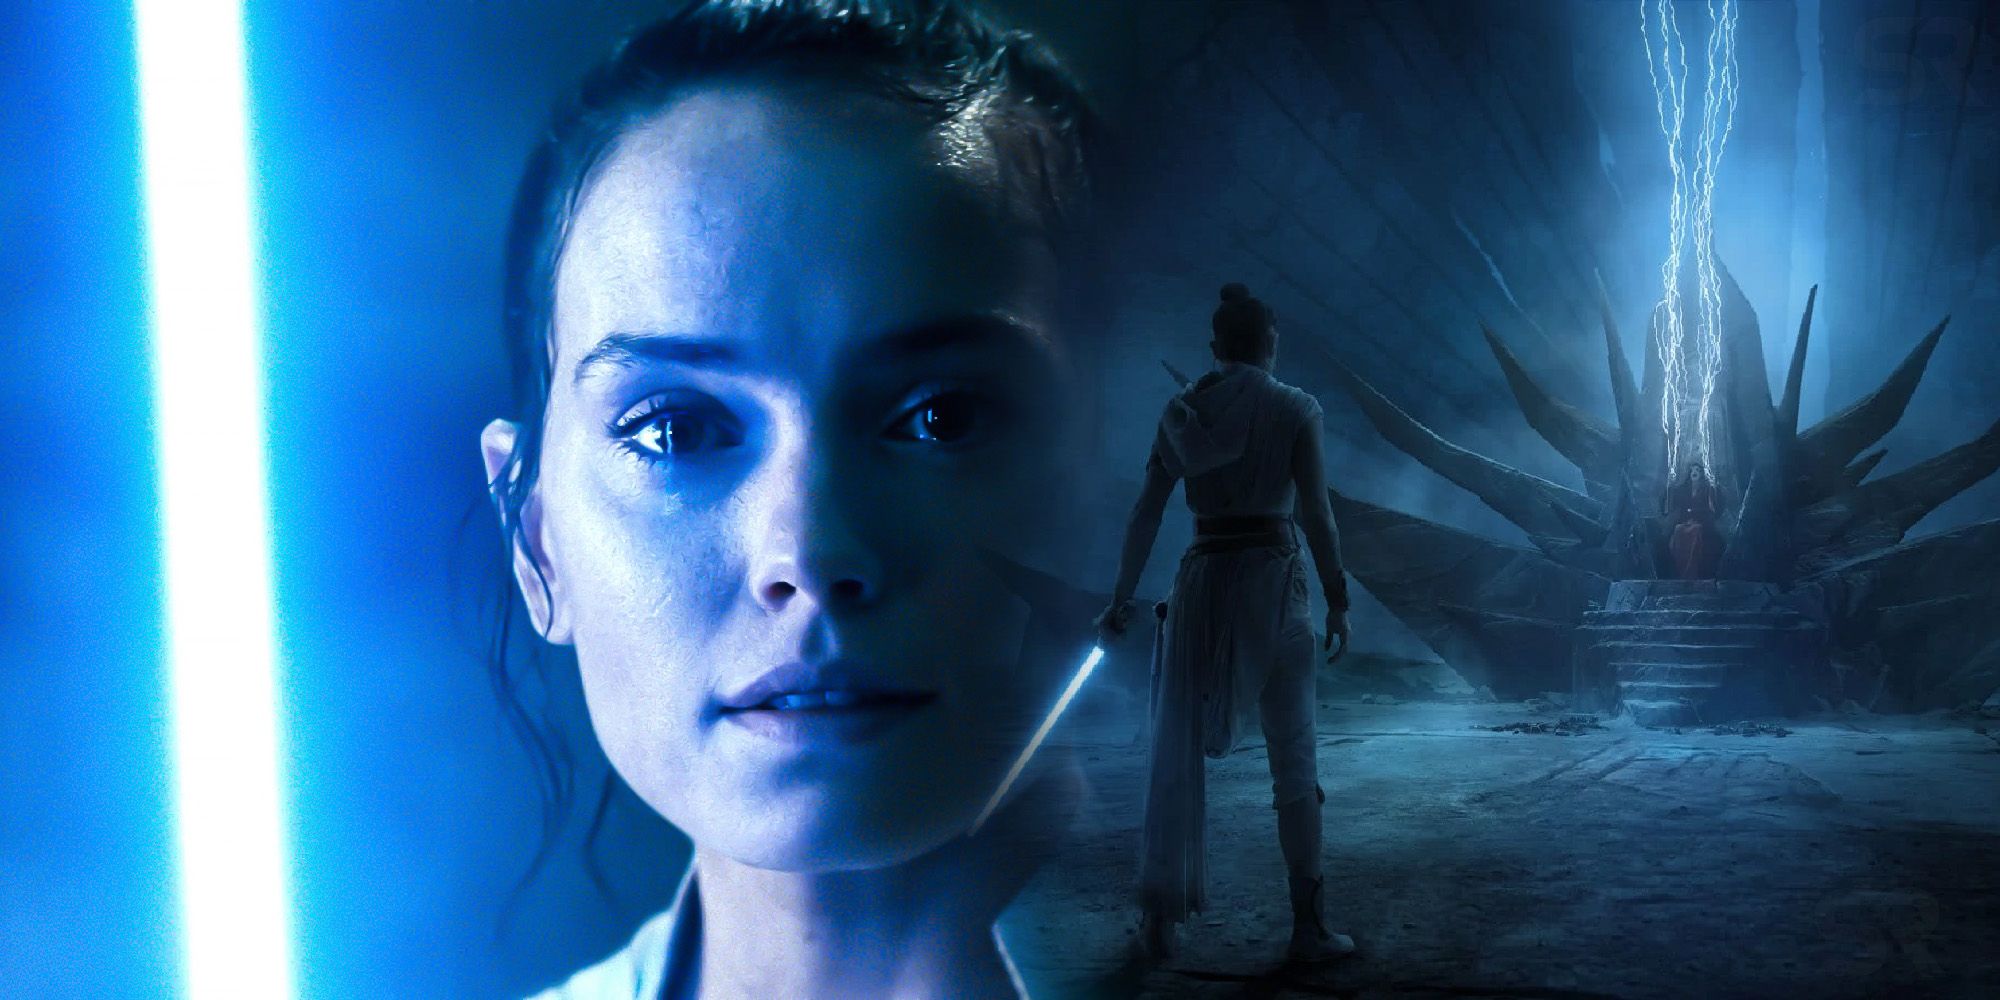 “No llegaron tantas ofertas” después del ascenso de Skywalker, admite Daisy Ridley